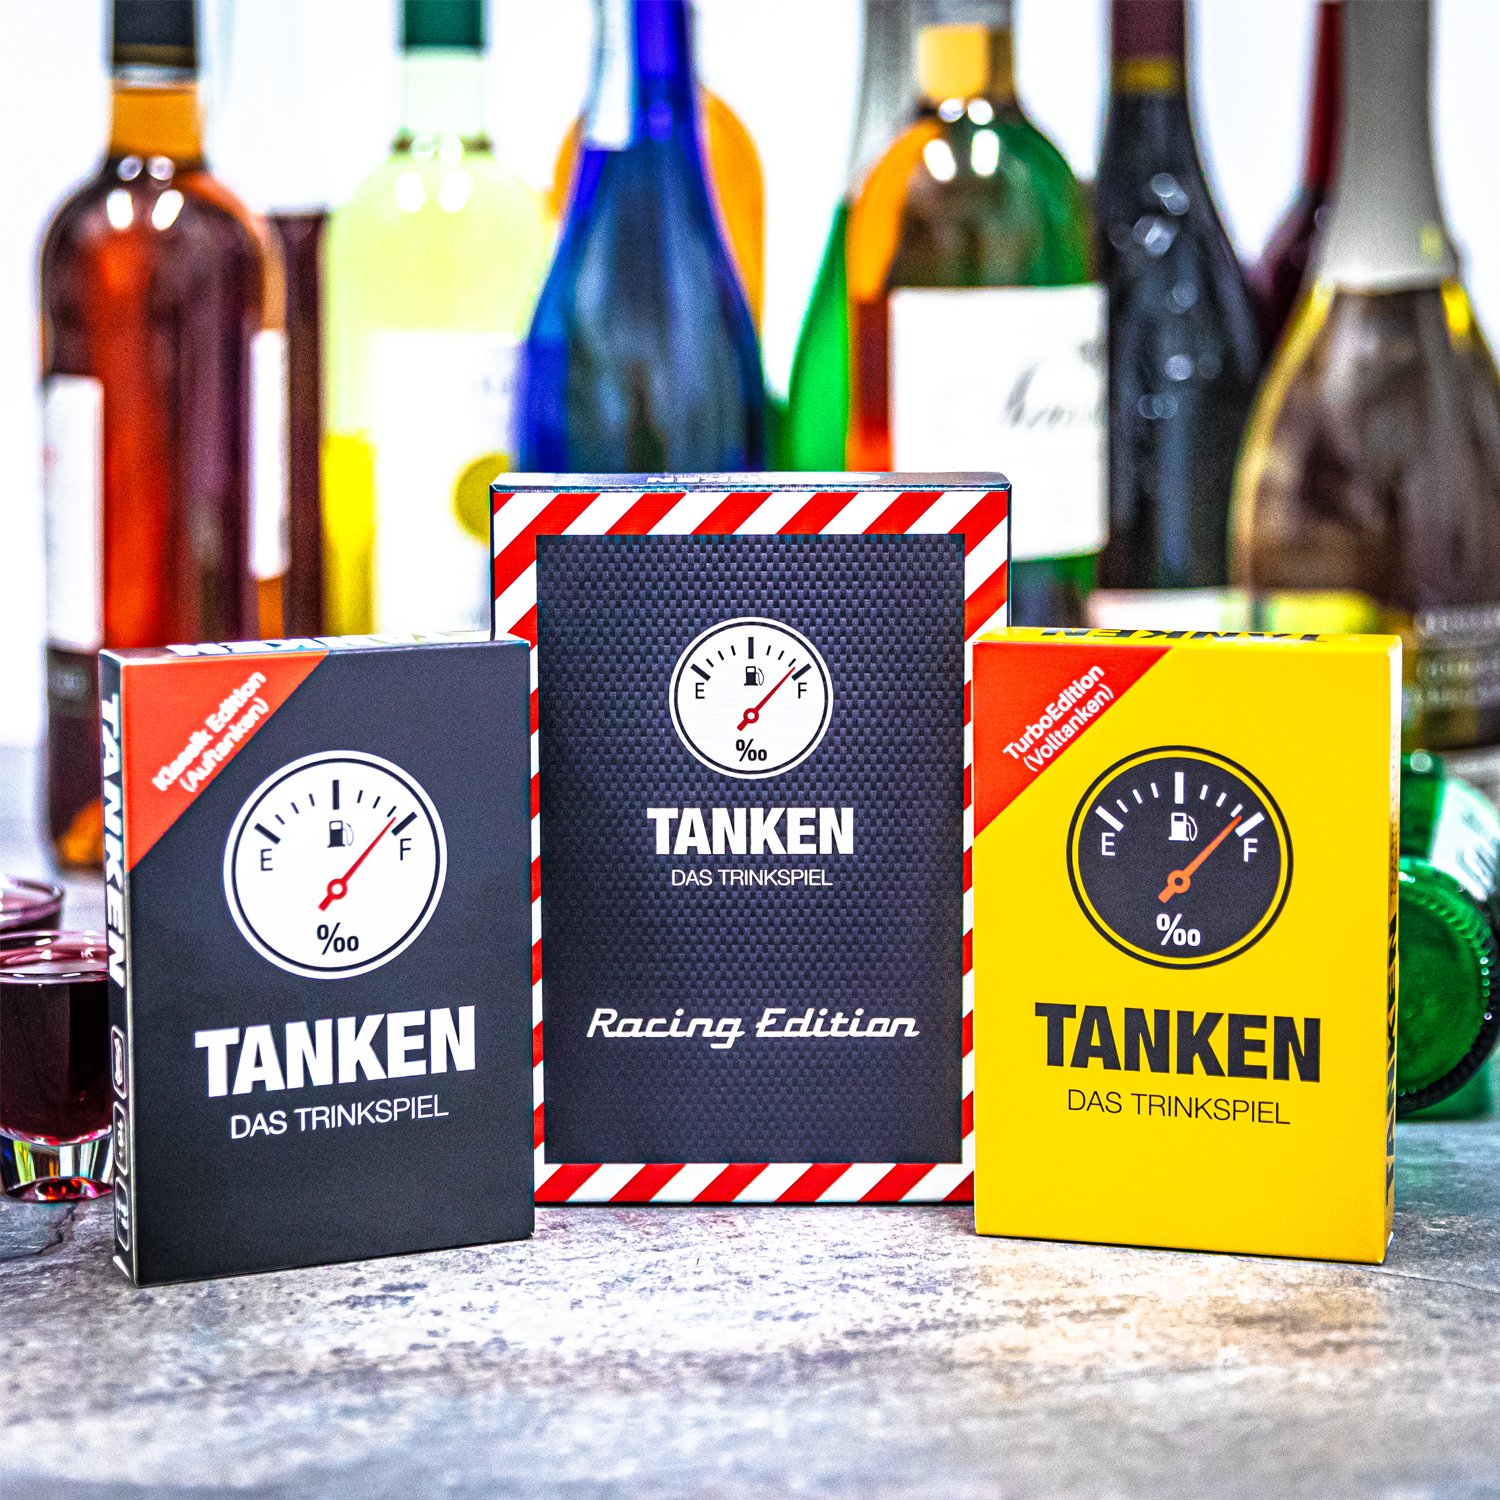 TANKEN - Das Trinkspiel Klassik / Turbo Edition